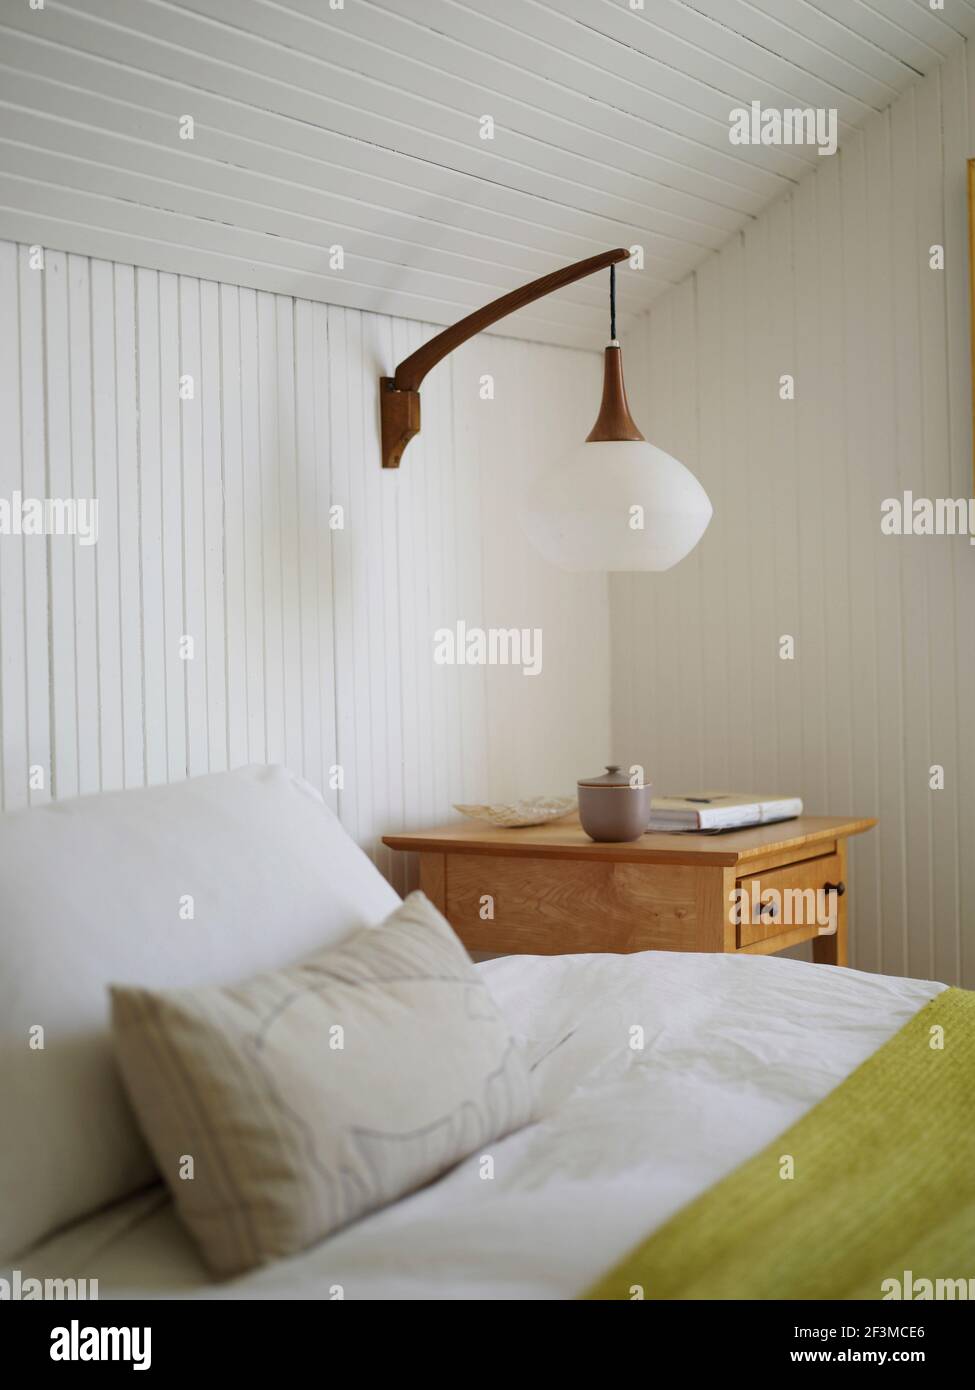 Weiß lackierte Feder und Nut geneigte Decke und Wände mit Nachttischlampe  in Wohnhaus, USA montiert Stockfotografie - Alamy